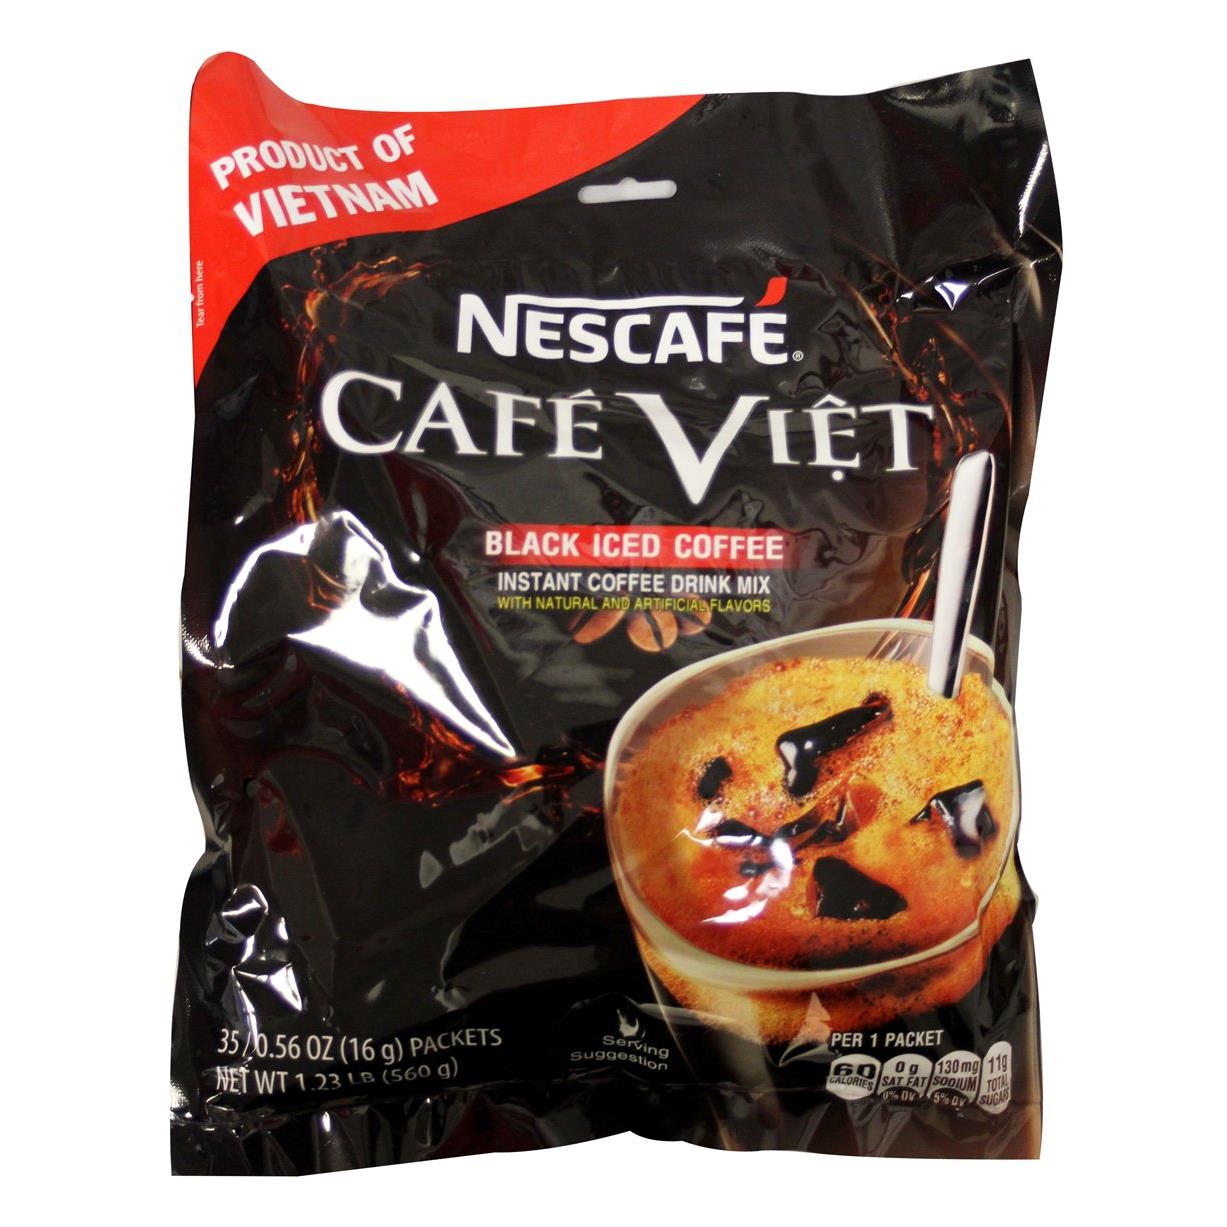 即溶越南黑冰咖啡 Nescafe Cafe Viet Black Iced coffee instant coffee drink mix - 35 Packets/1.23lb